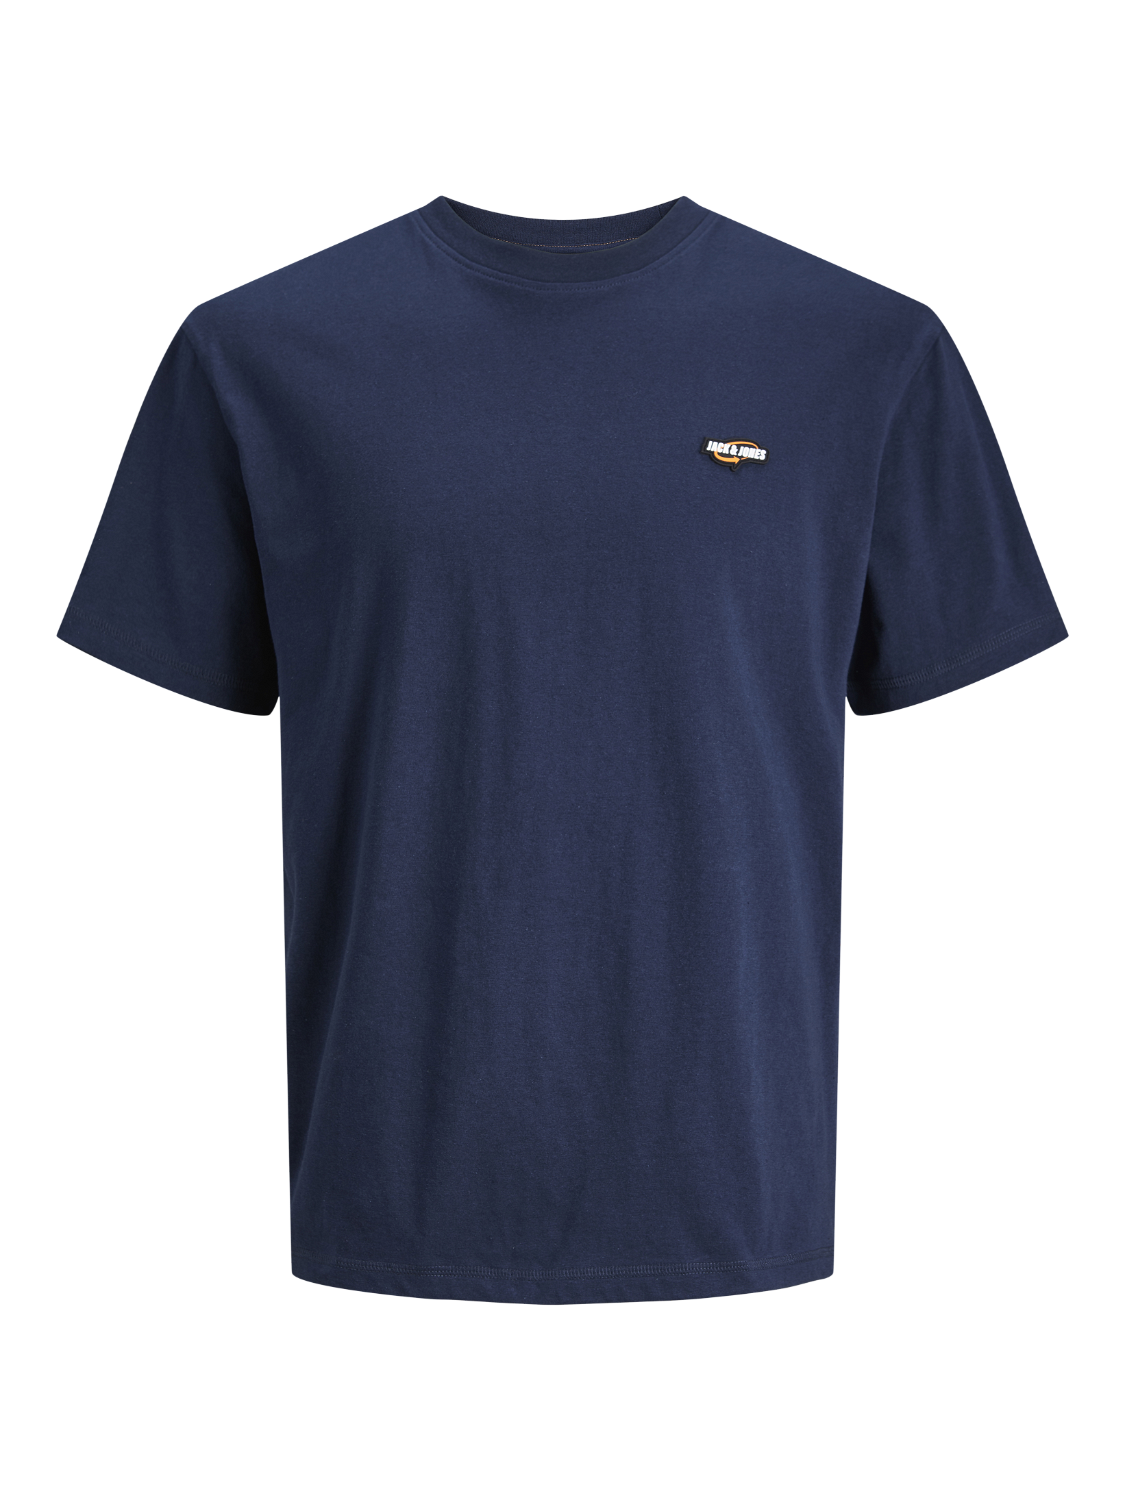 Camiseta básica  azul con logo - JCOBLACK